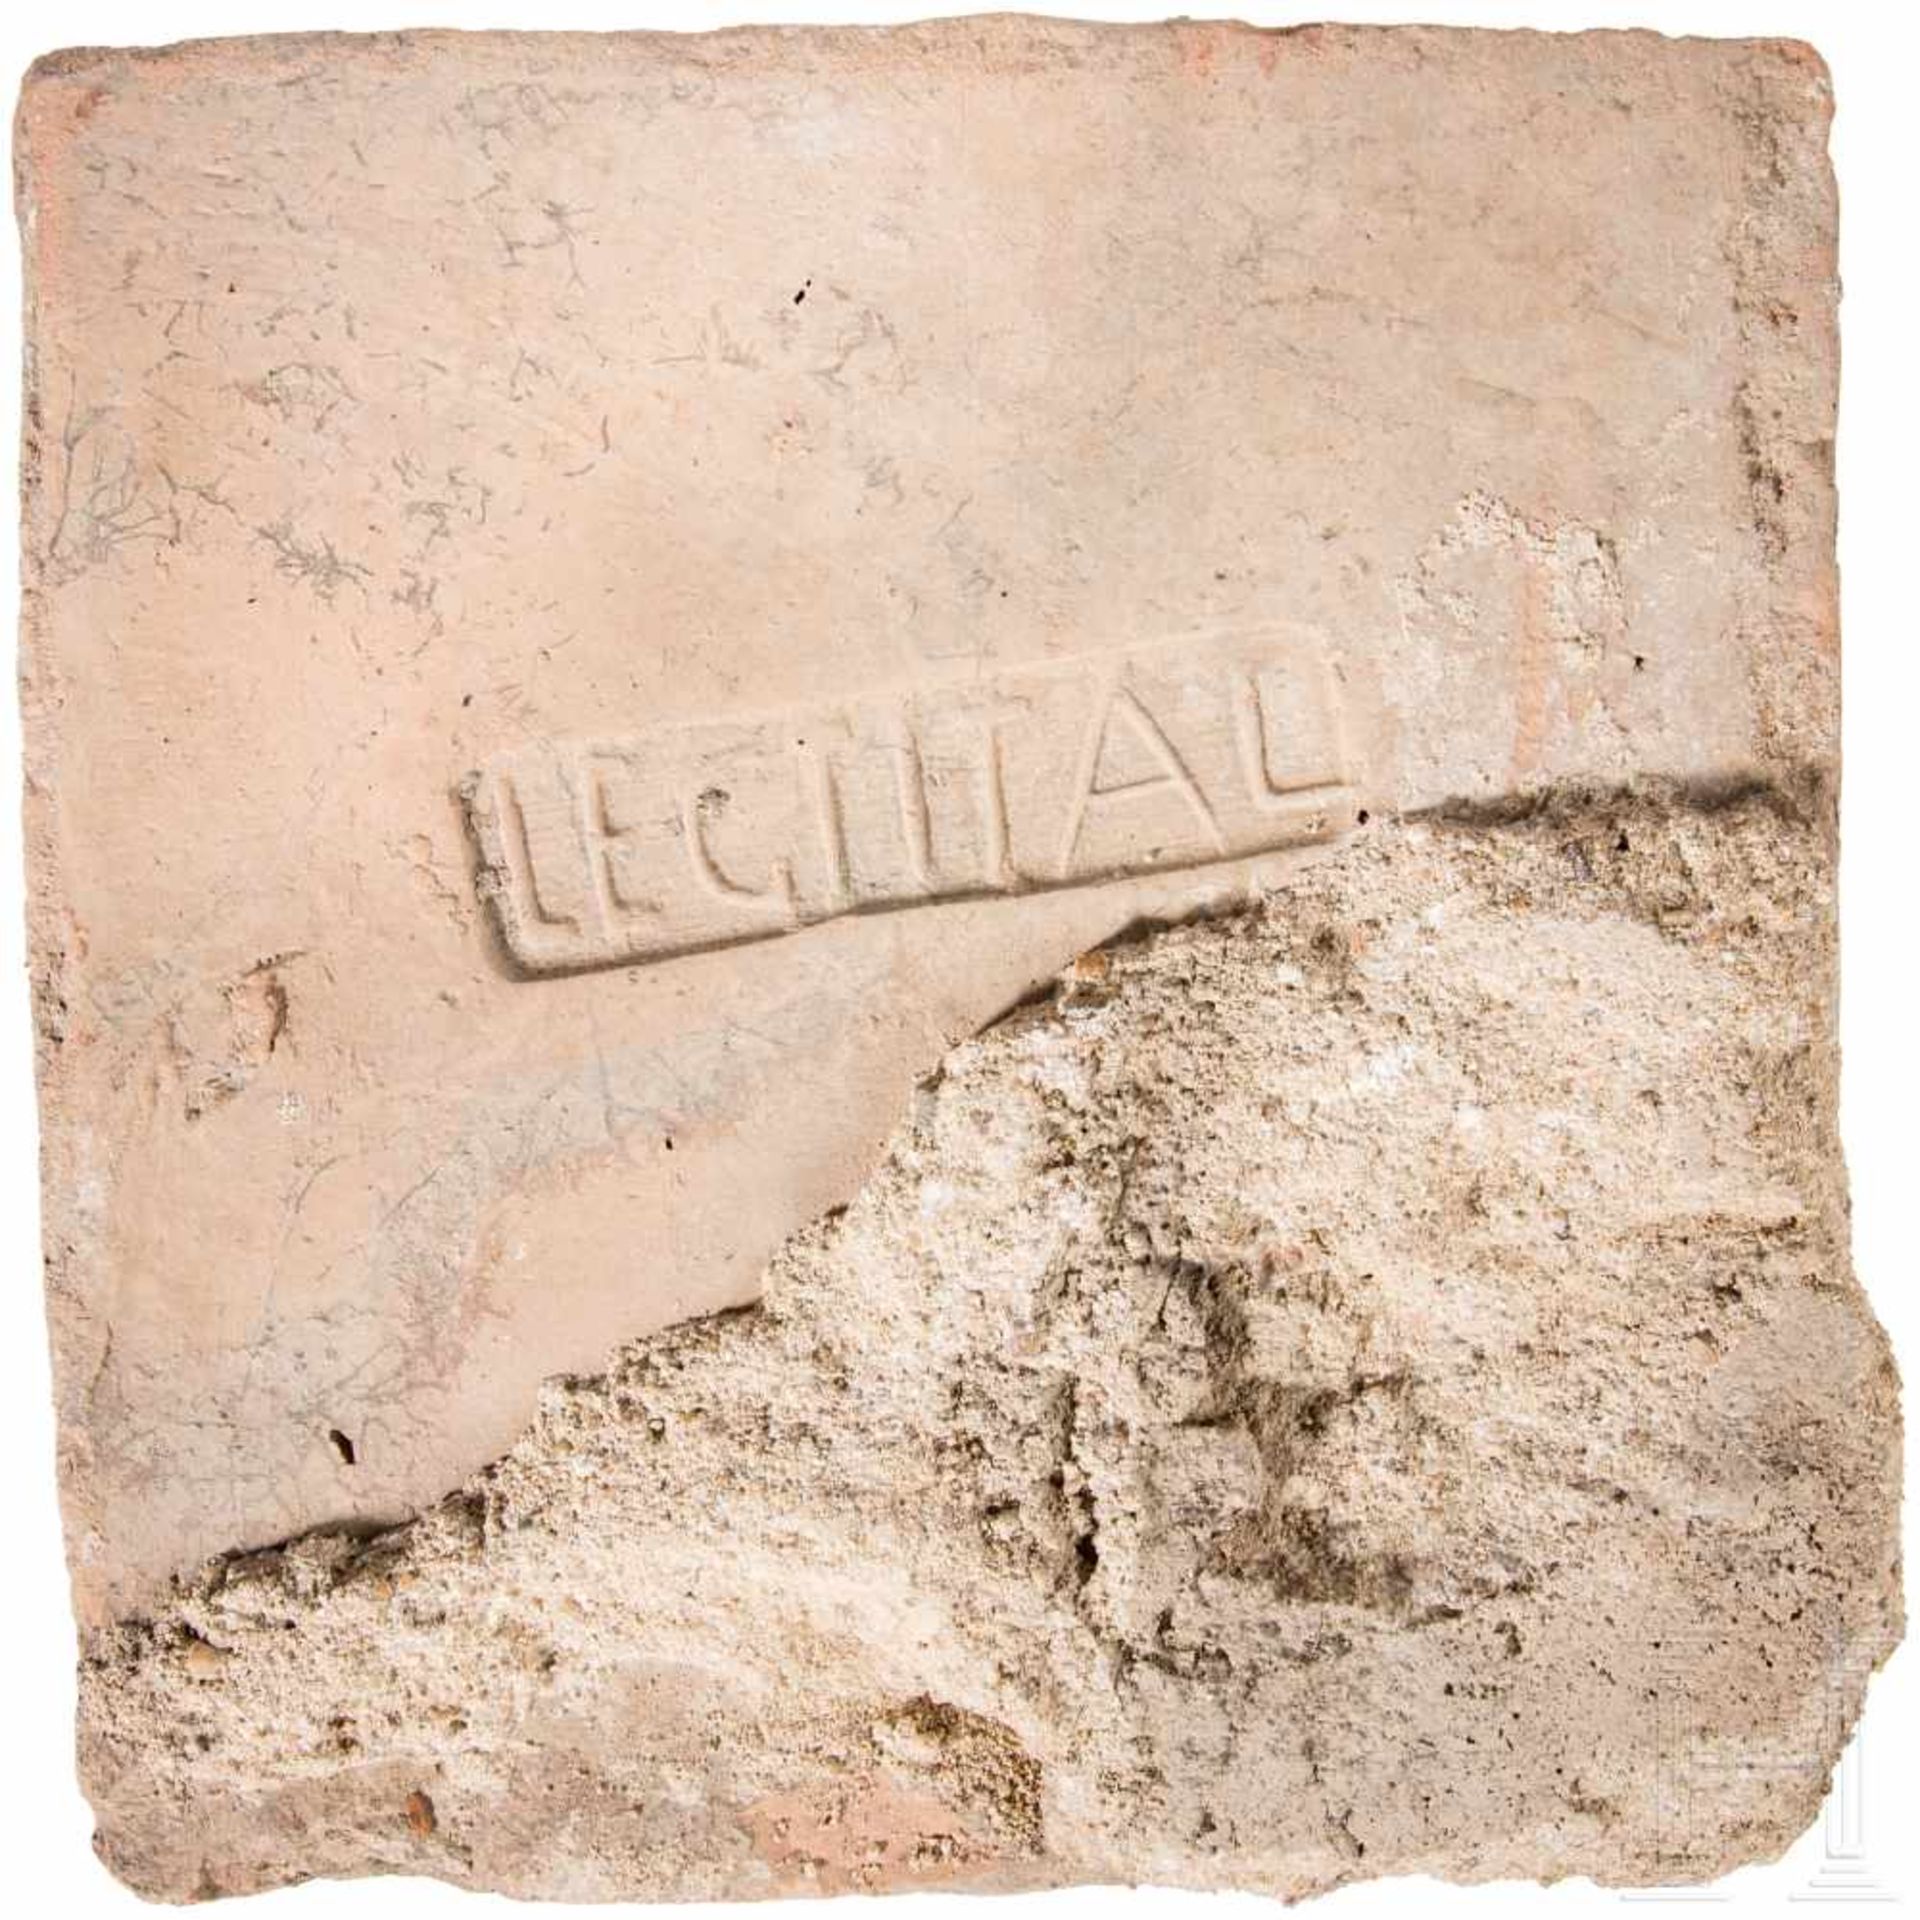 Ziegelfragment mit Stempel der 1. Legion Italica, römisch, Ende 1. Jhdt. - 4. Jhdt.Quadratischer